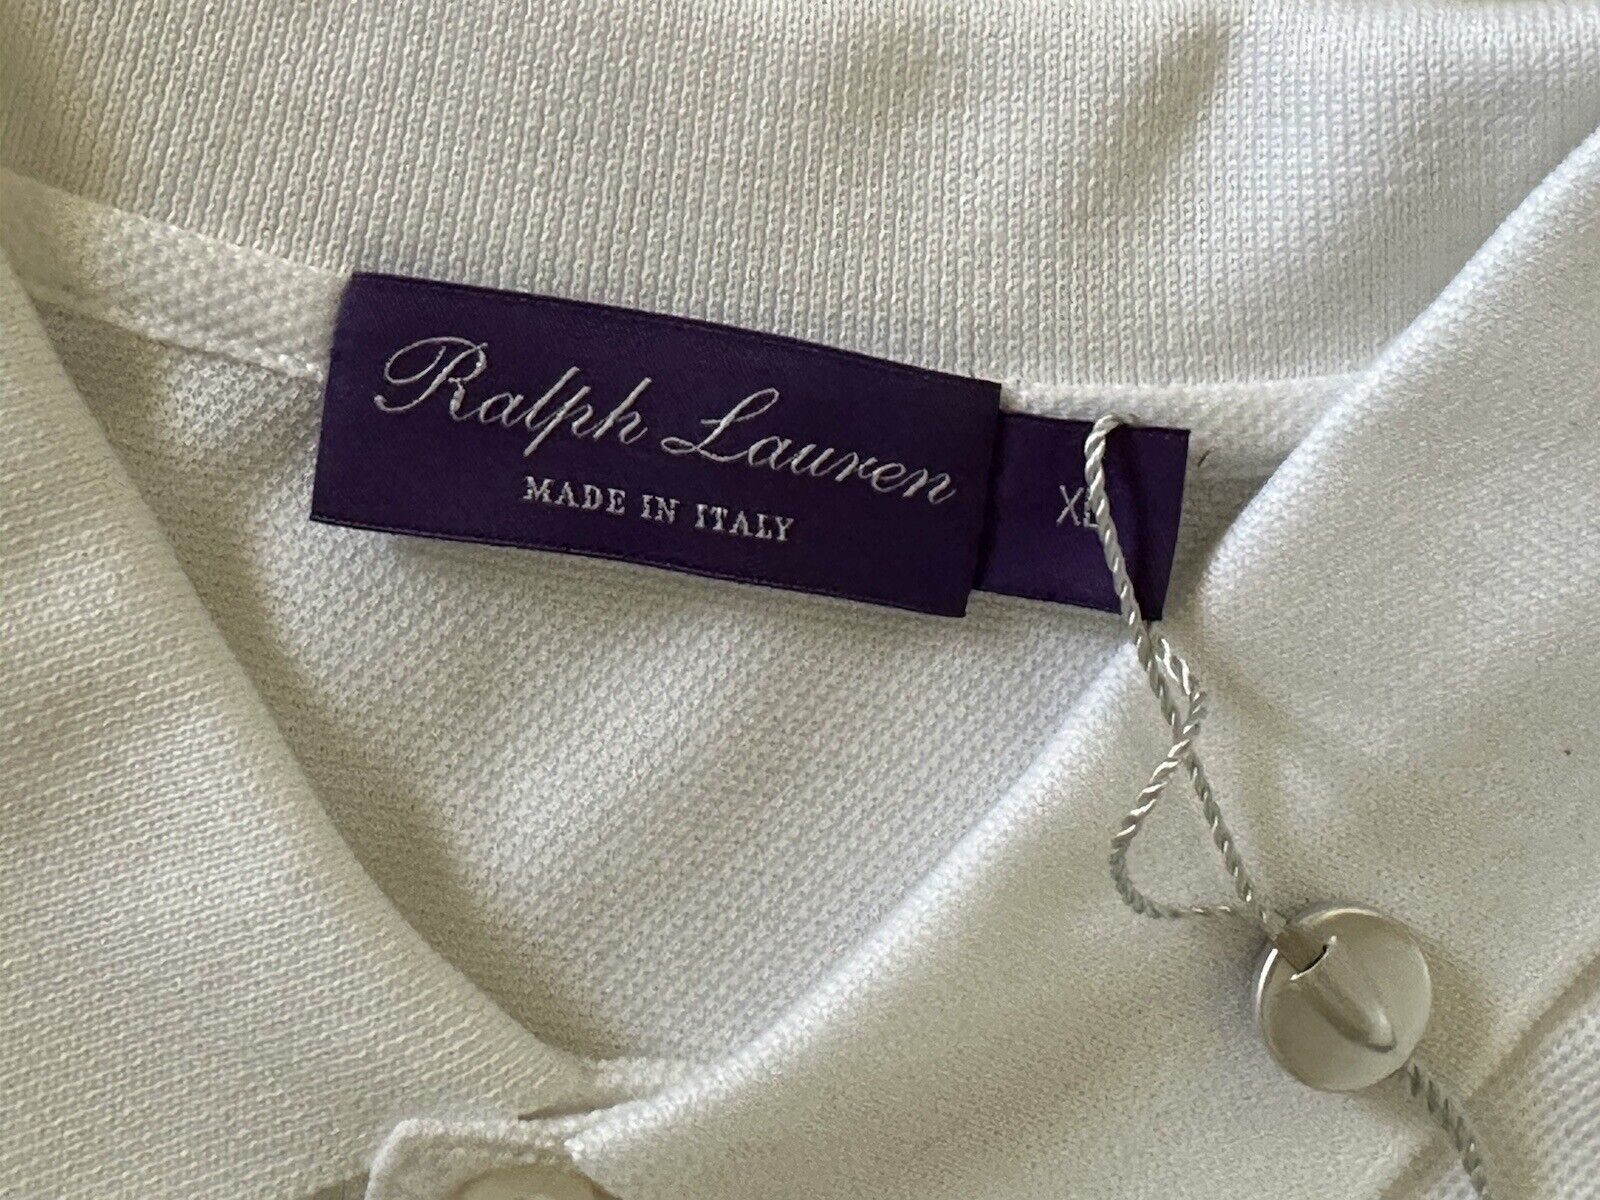 СЗТ 395 долларов США Ralph Lauren Purple Label Белая хлопковая рубашка поло XL, сделано в Италии